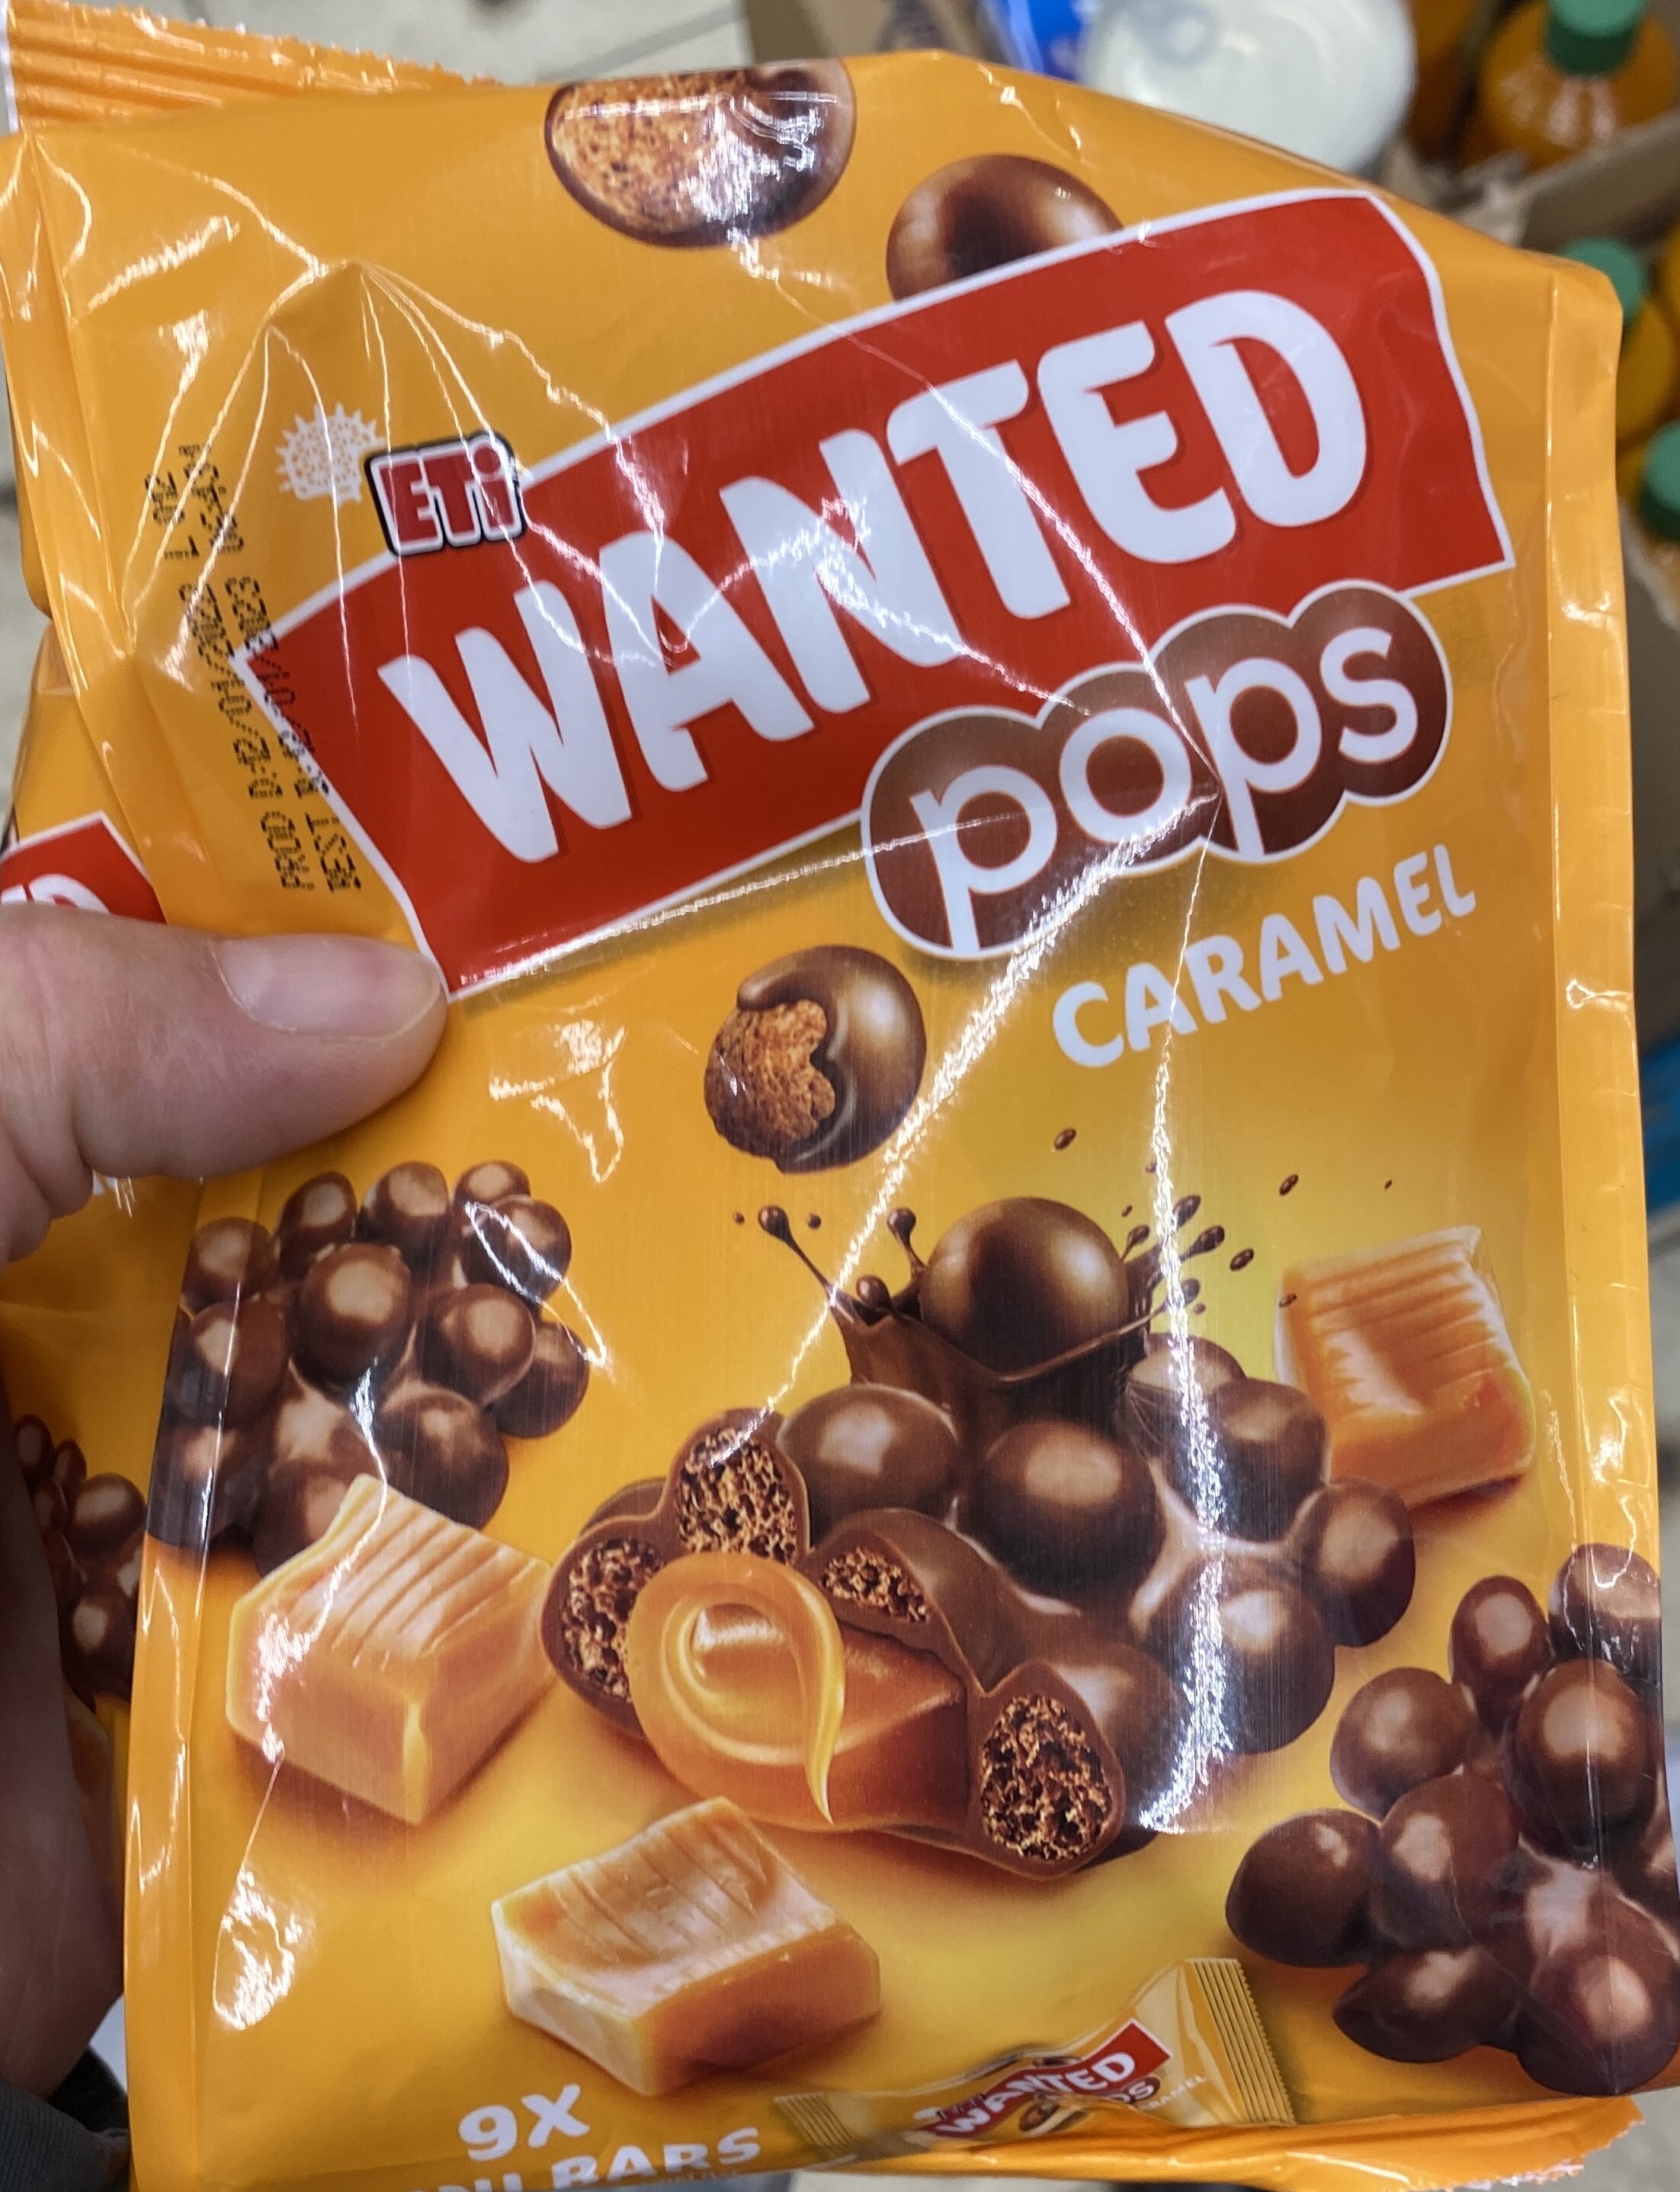 Wanten pops caramel - Product - en